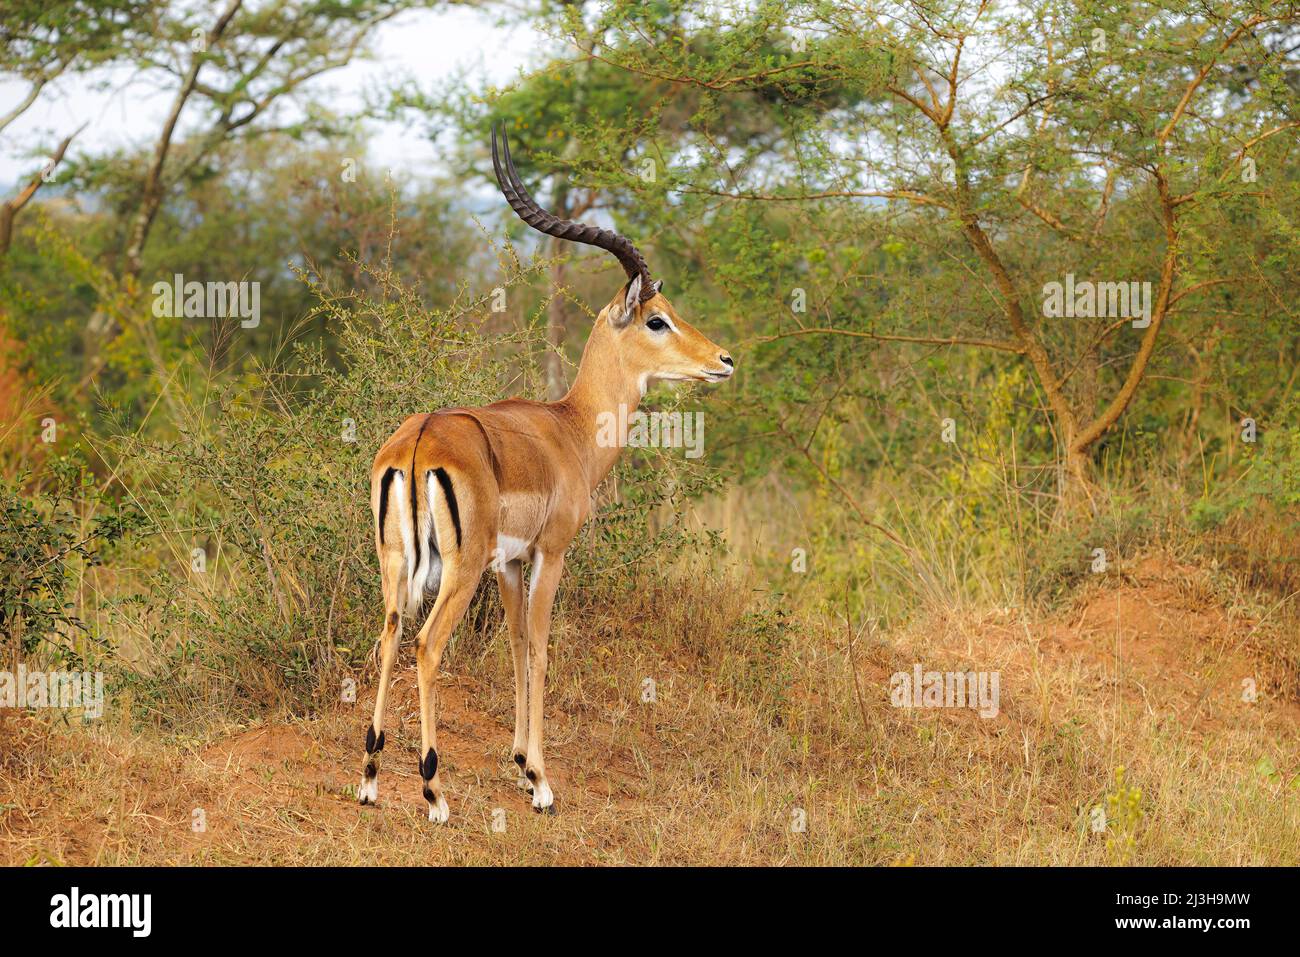 Uganda, Mbarara district, Mburo, Mburo lake national park, impala Stock Photo